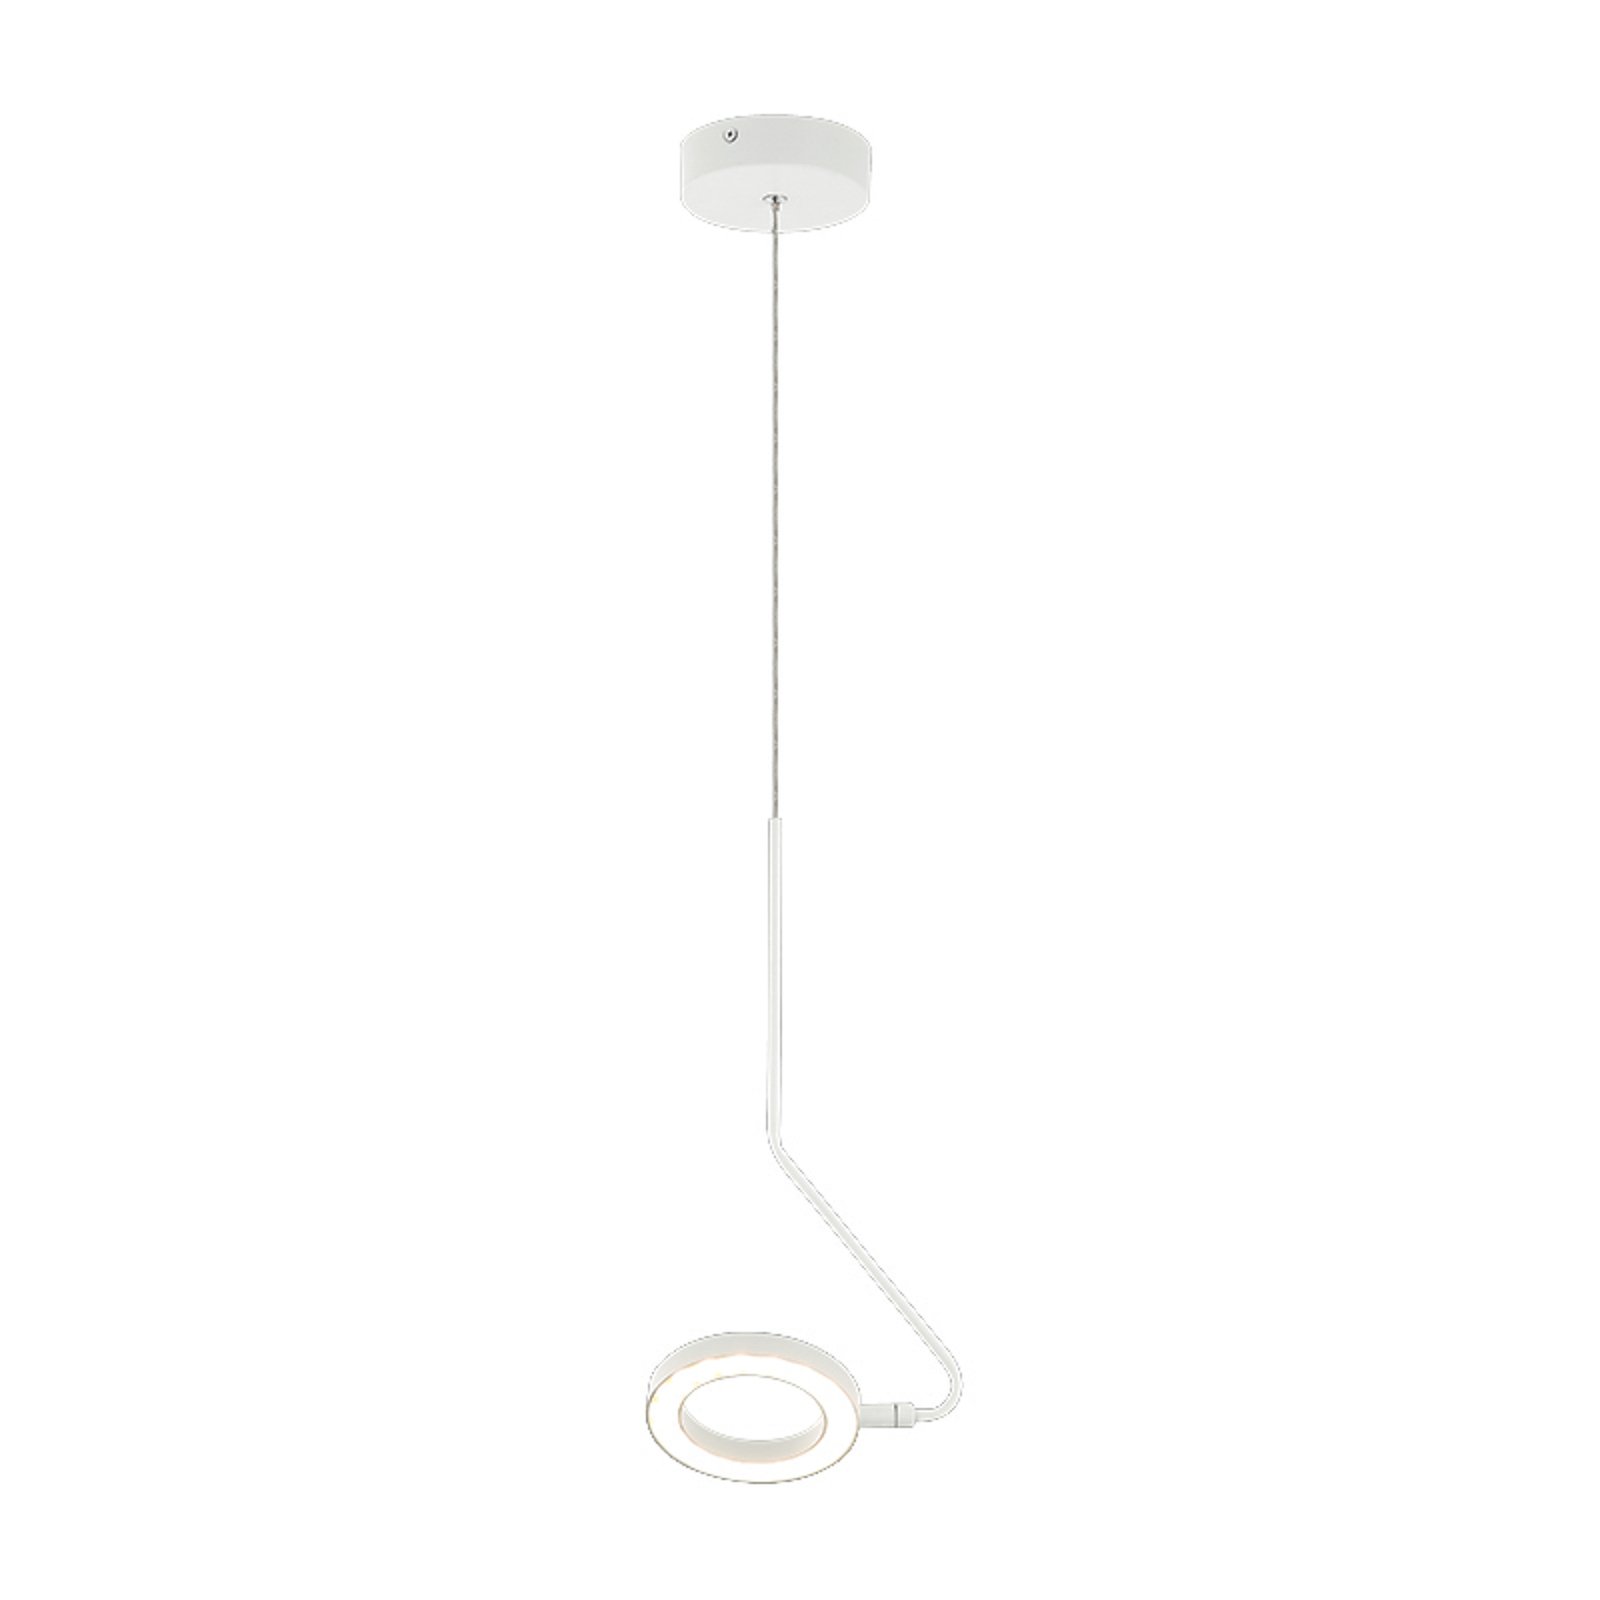 LED hanging light 22044 movable arm white matt